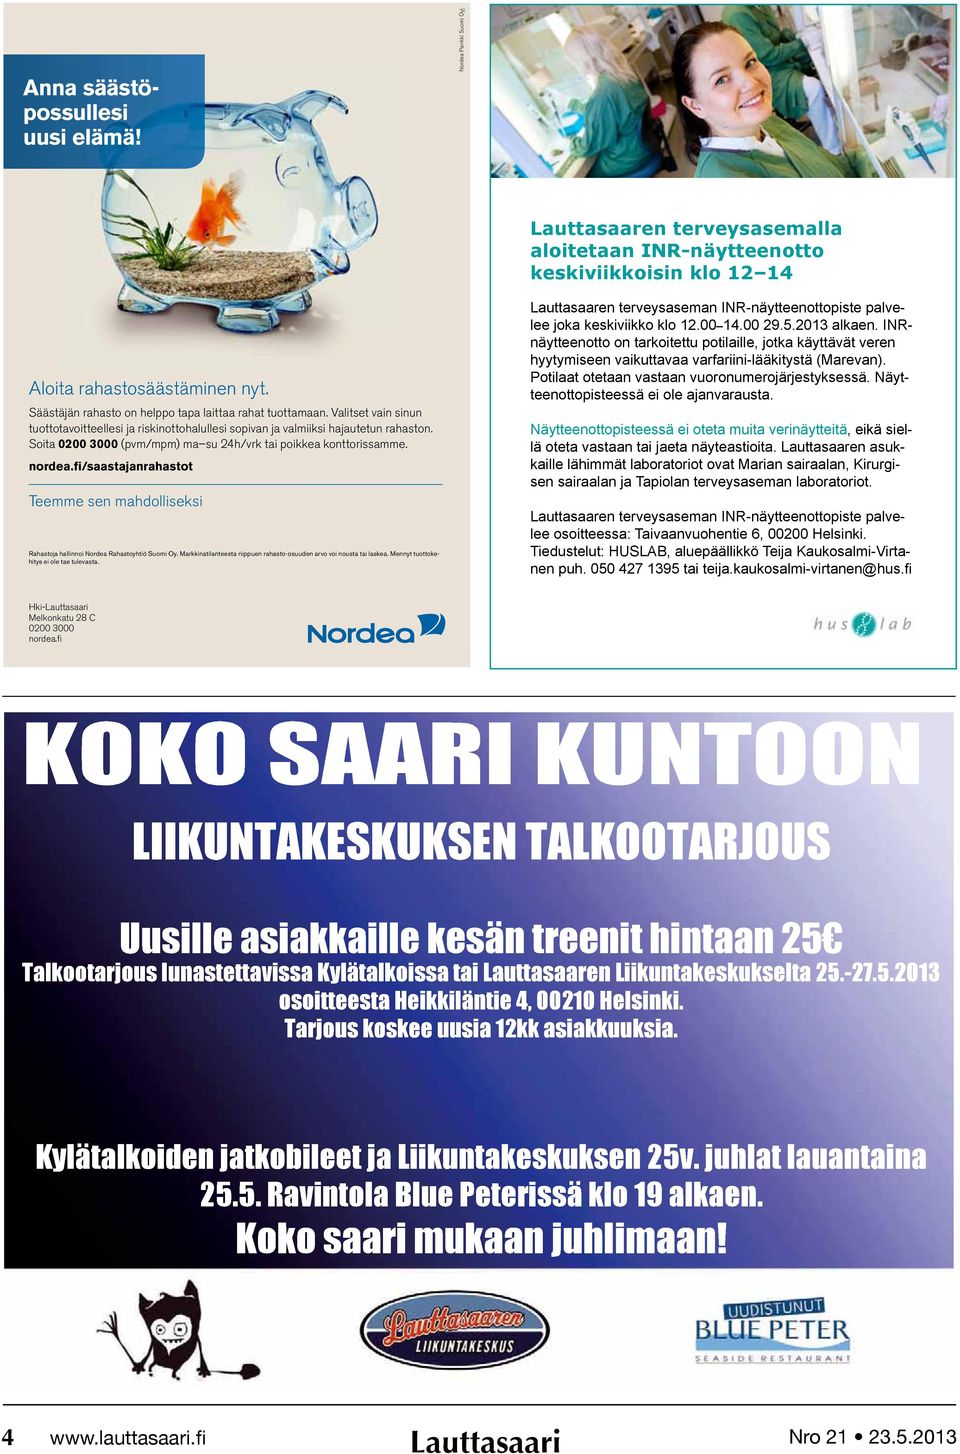 Soita 0200 3000 (pvm/mpm) ma su 24h/vrk tai poikkea konttorissamme. nordea.fi/saastajanrahastot Teemme sen mahdolliseksi Rahastoja hallinnoi Nordea Rahastoyhtiö Suomi Oy.